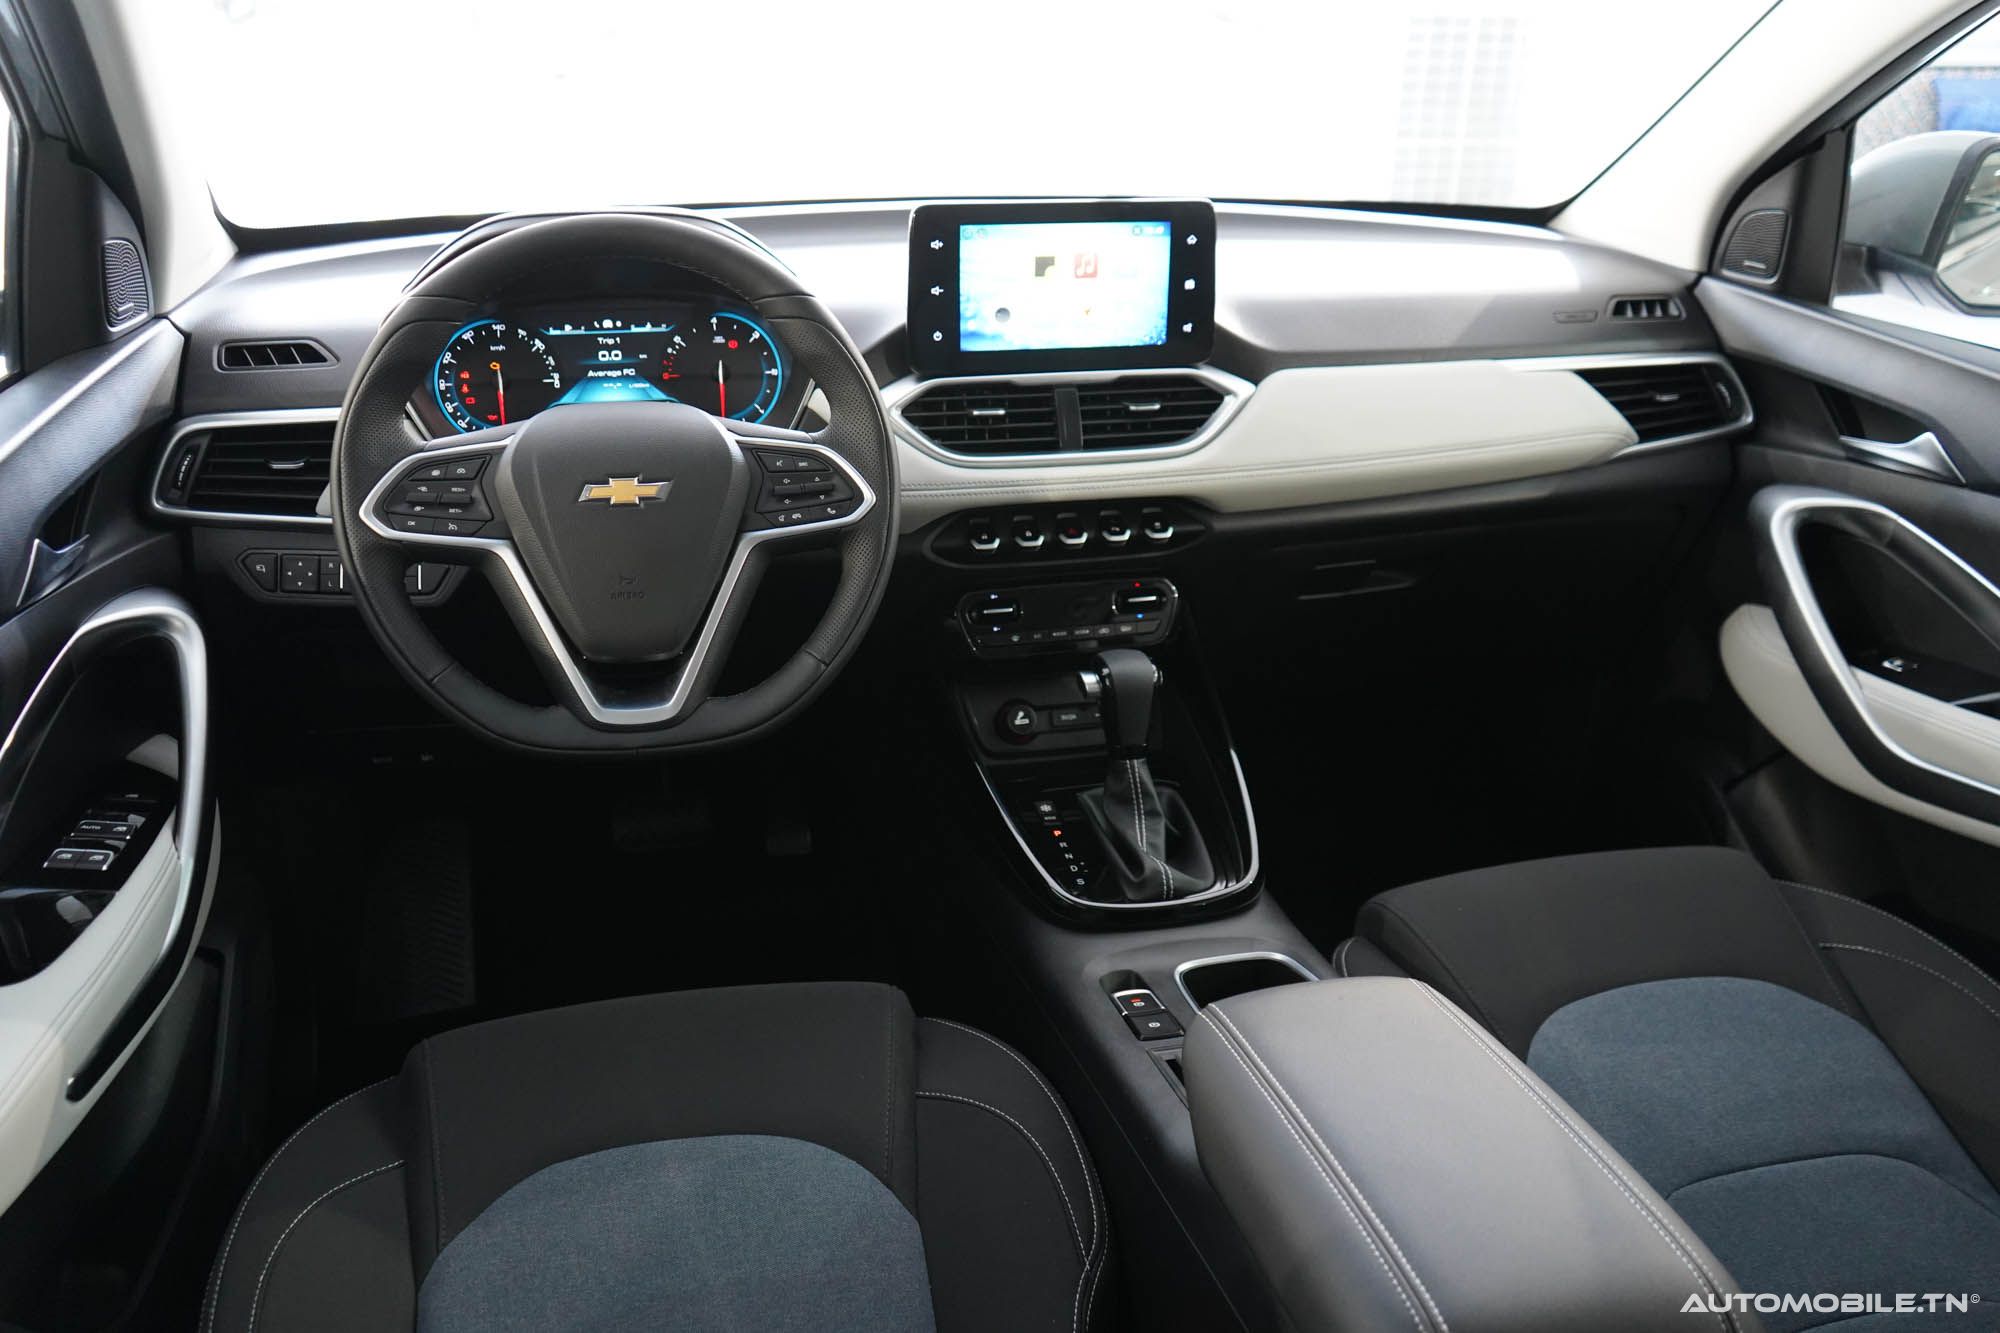 Nouveau Chevrolet Captiva - Le SUV disponible en 5 et 7 places